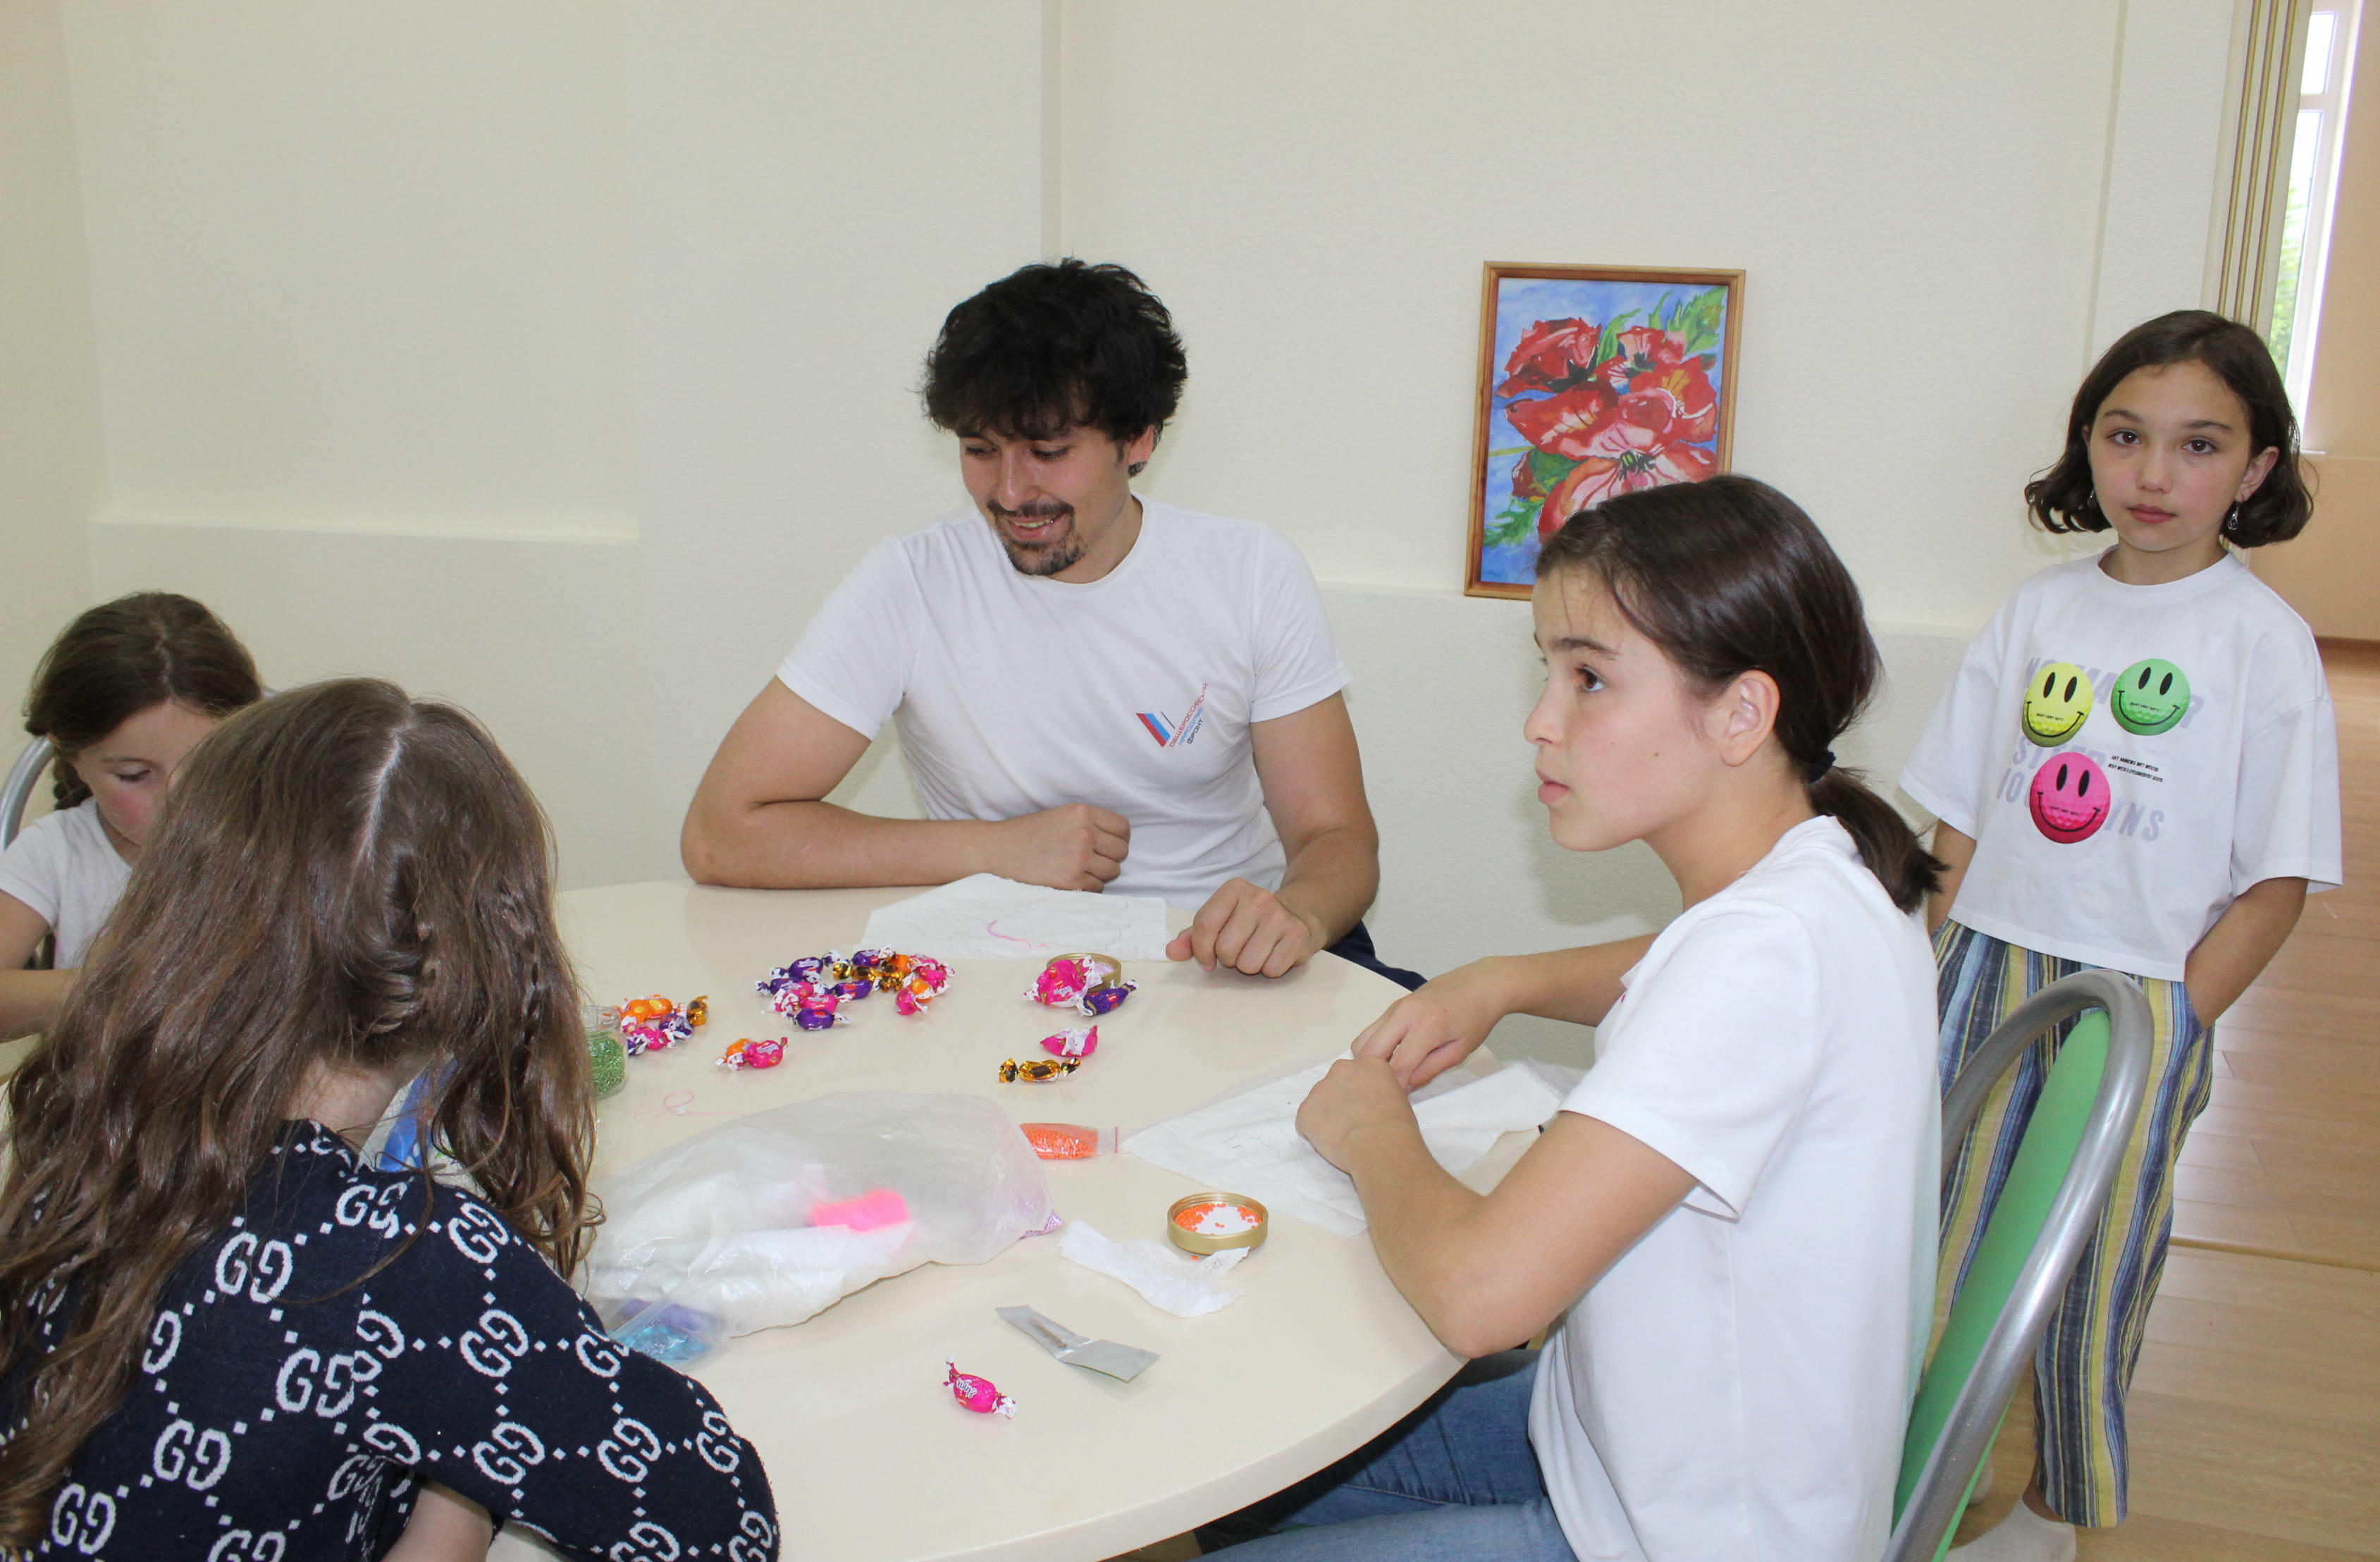 В Кабардино-Балкарии открыли летний арт-центр для детей с ограниченными возможностями здоровья 